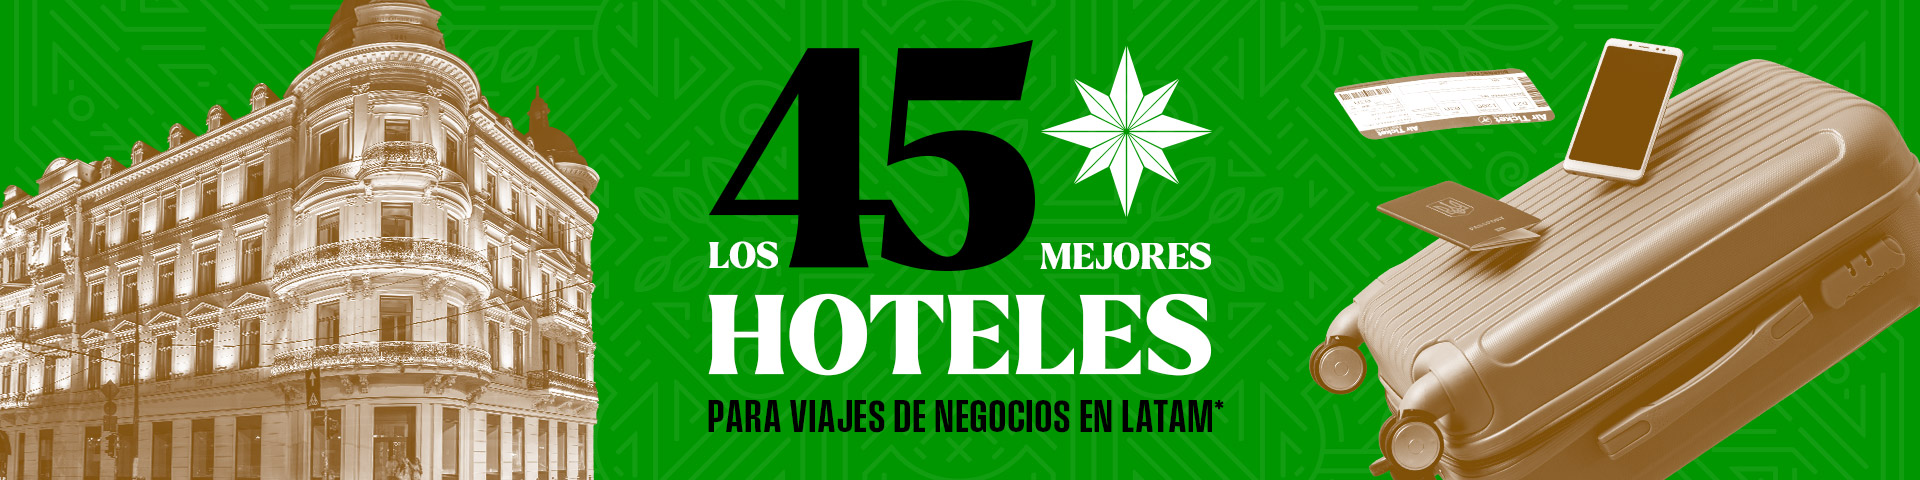 Top 45: Mejores hoteles de Colombia, México, Argentina y Latam para negocios